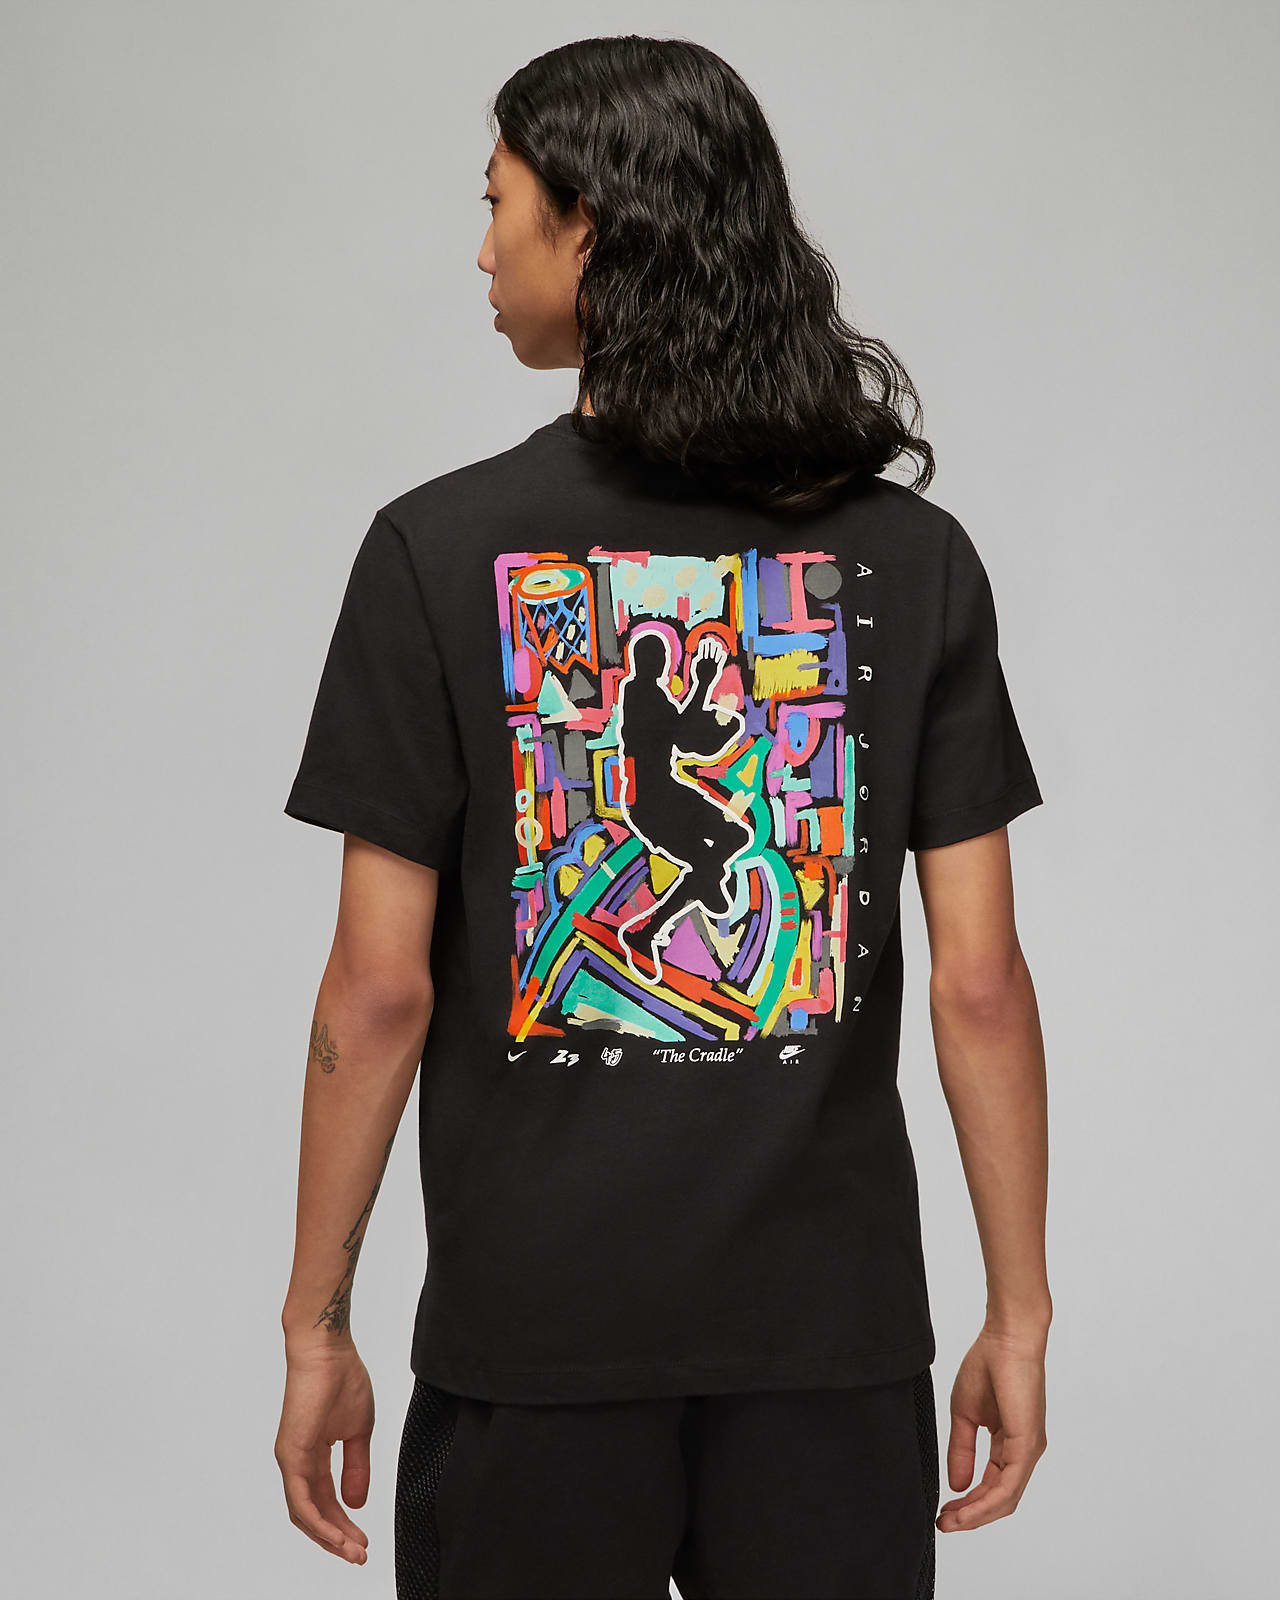 Nike公式 ジョーダン ブランド メンズ グラフィック Tシャツ オンラインストア 通販サイト